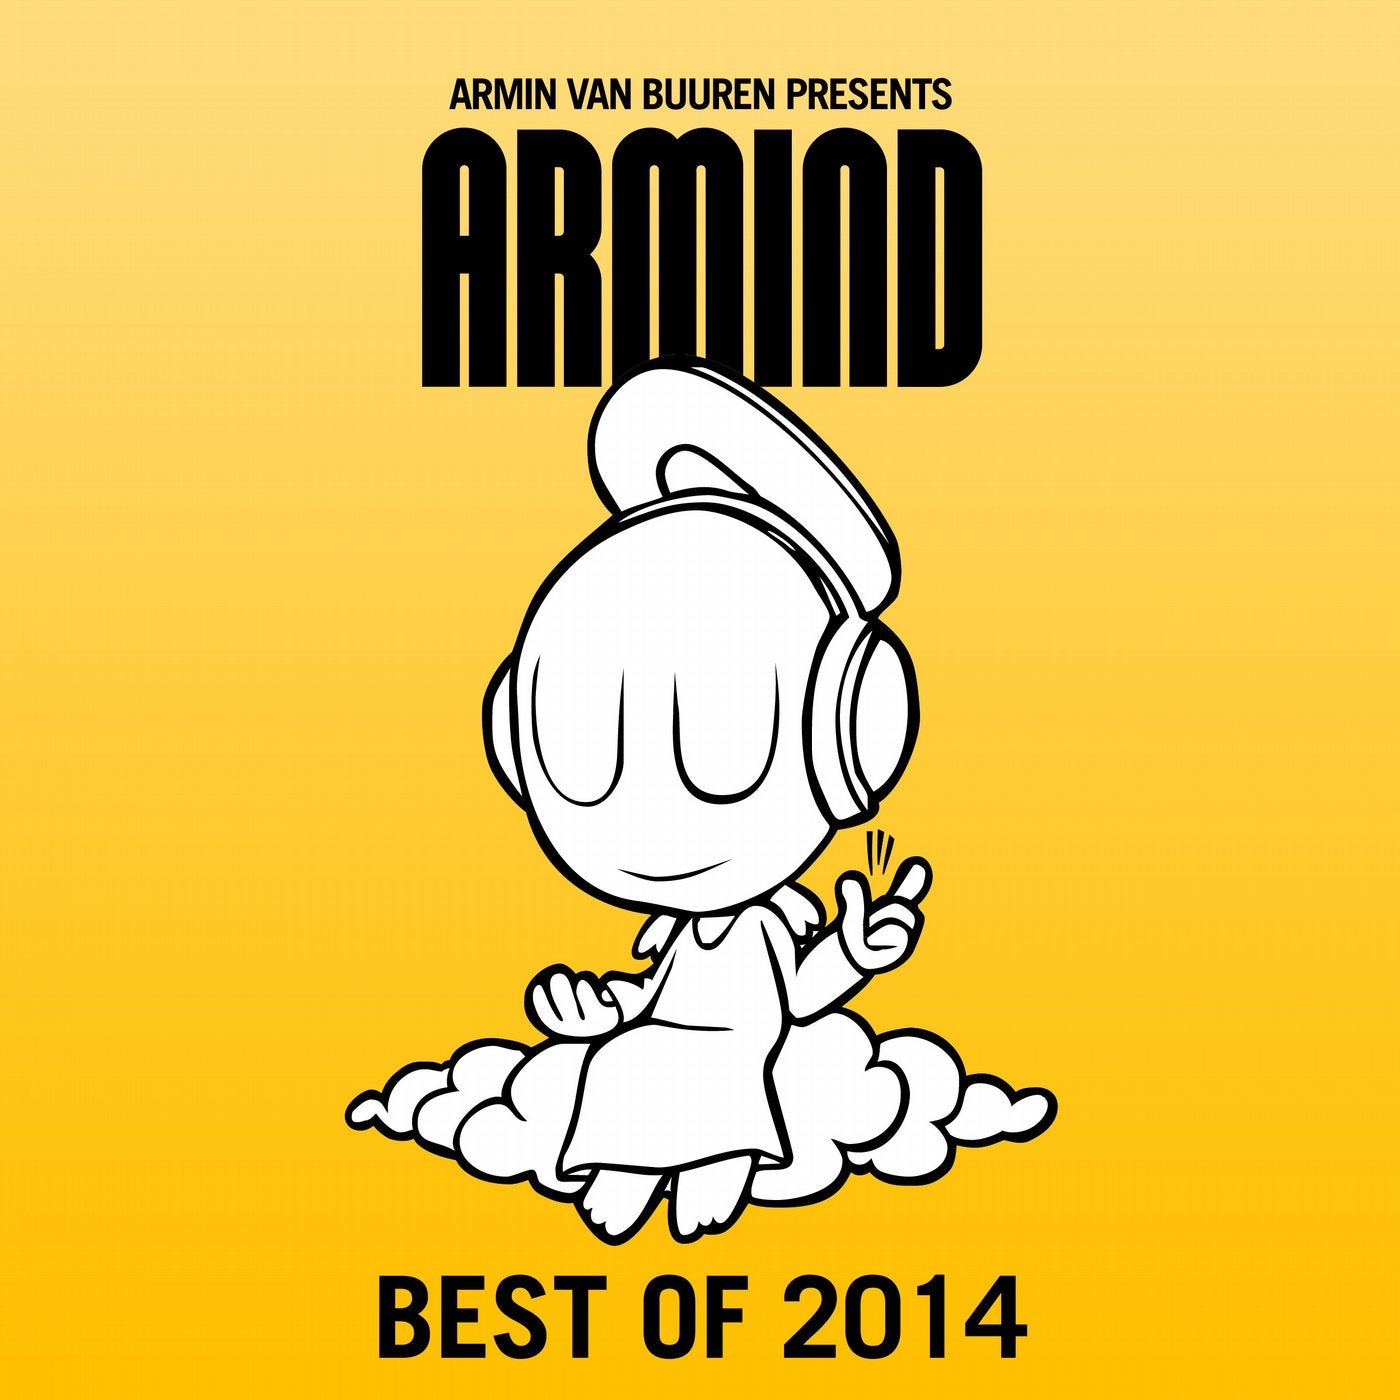 Armin van Buuren presents Armind - Best of 2014